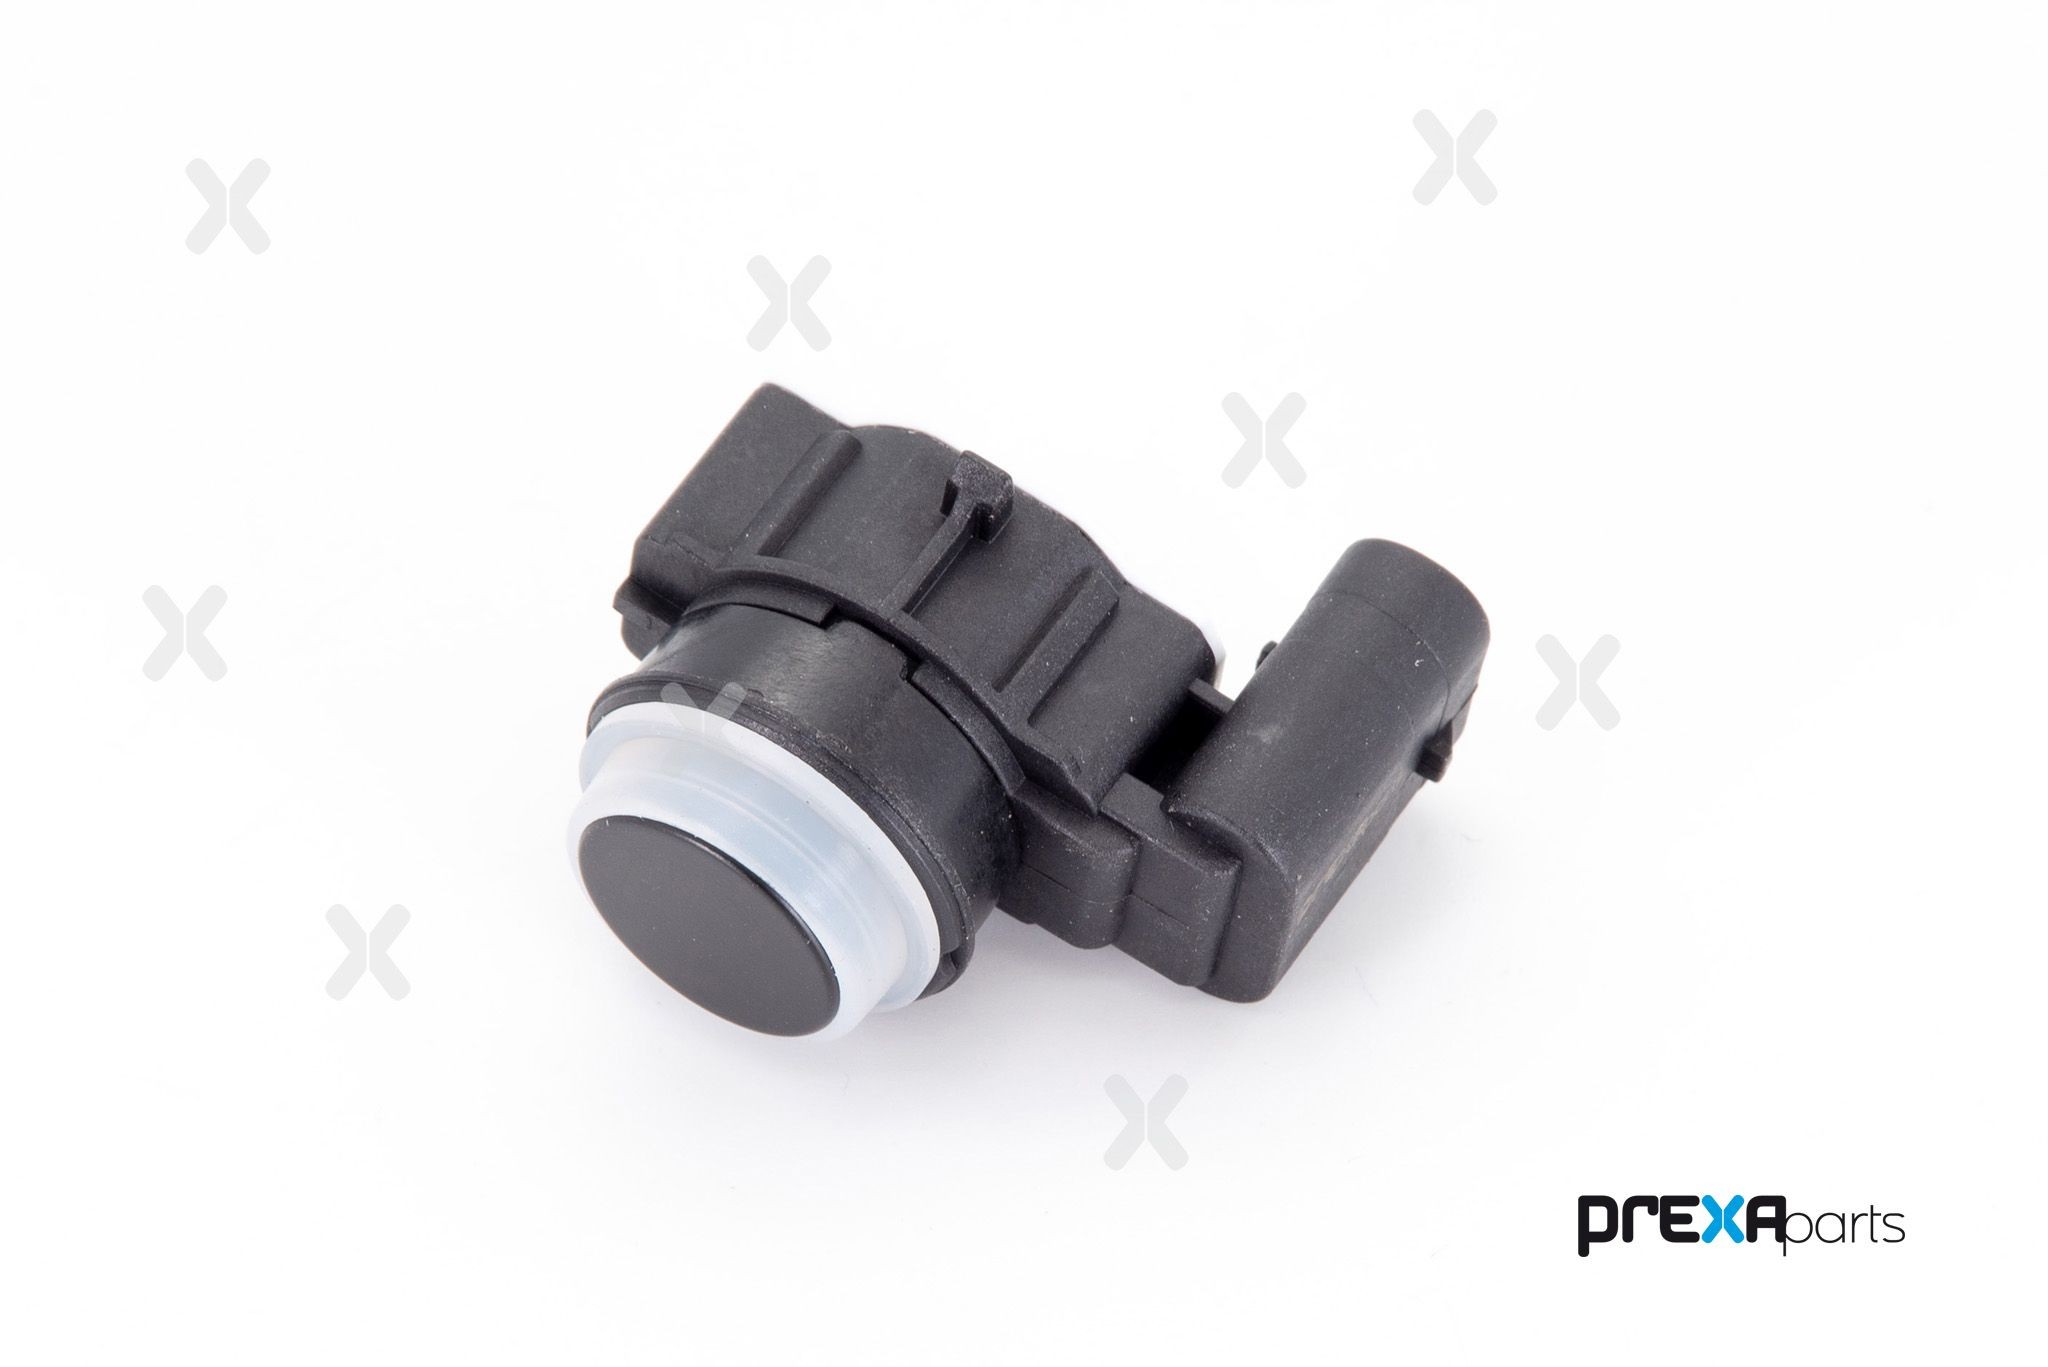 PREXAparts P203130 Parking sensor 66209261601